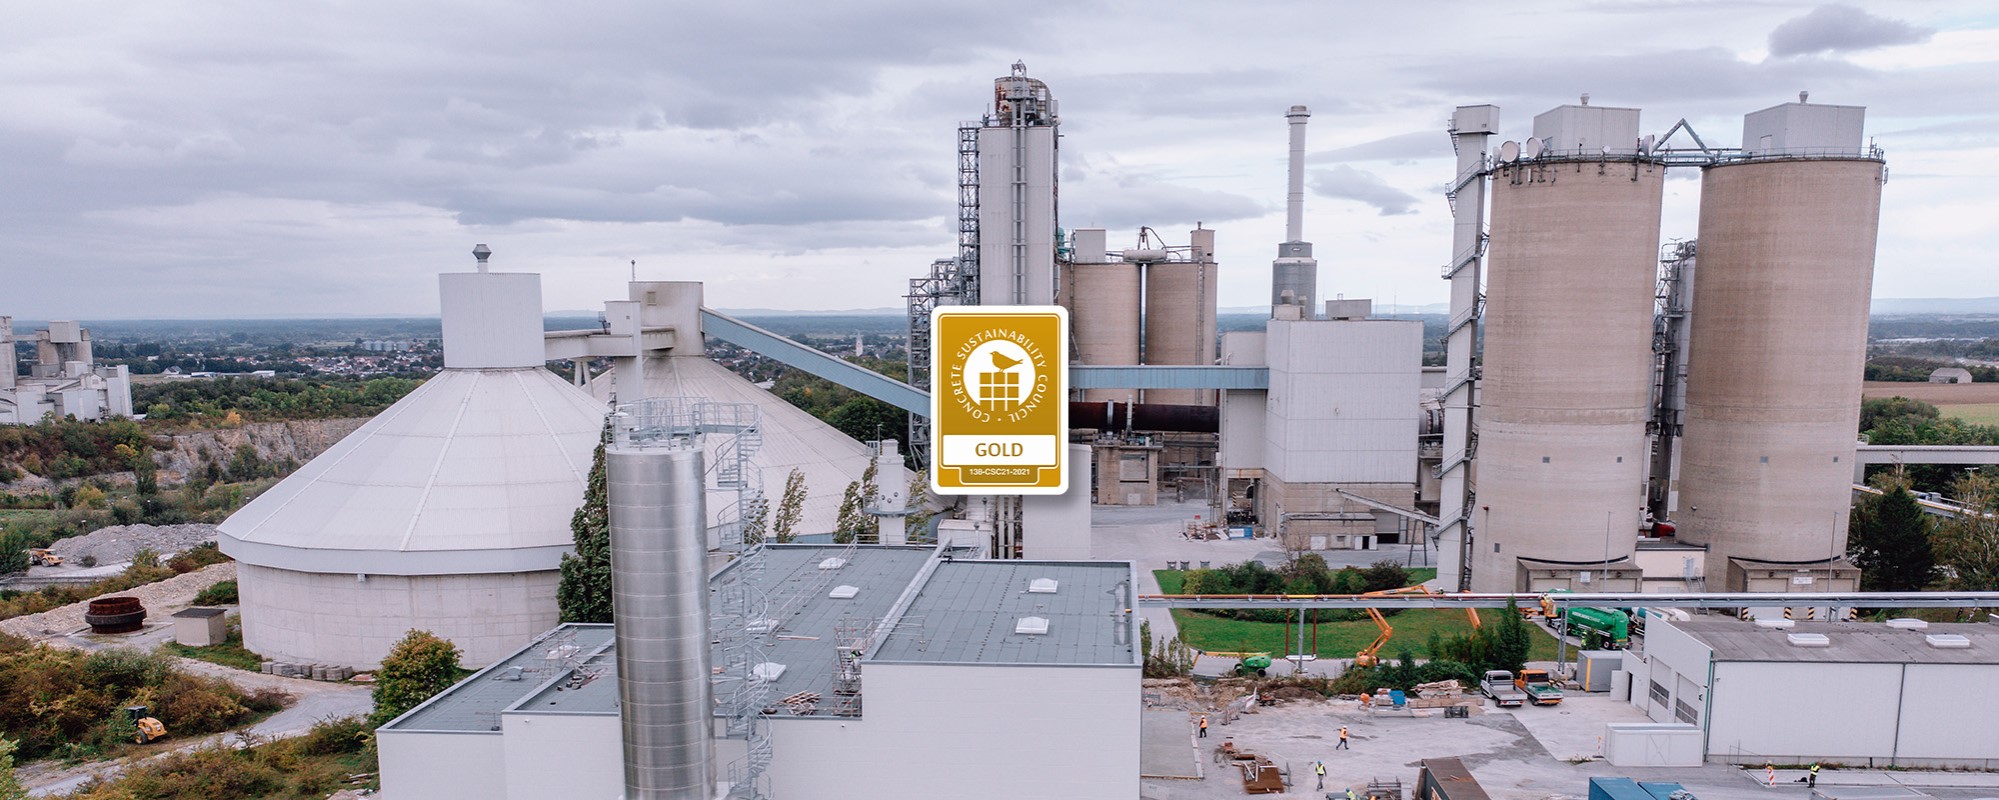 Das Zementwerk Geseke mit den Werksteilen Elsa und Milke – Markenzeichen für eine leistungsfähige Produktion und Teil lebendiger Geschichte in der Region.